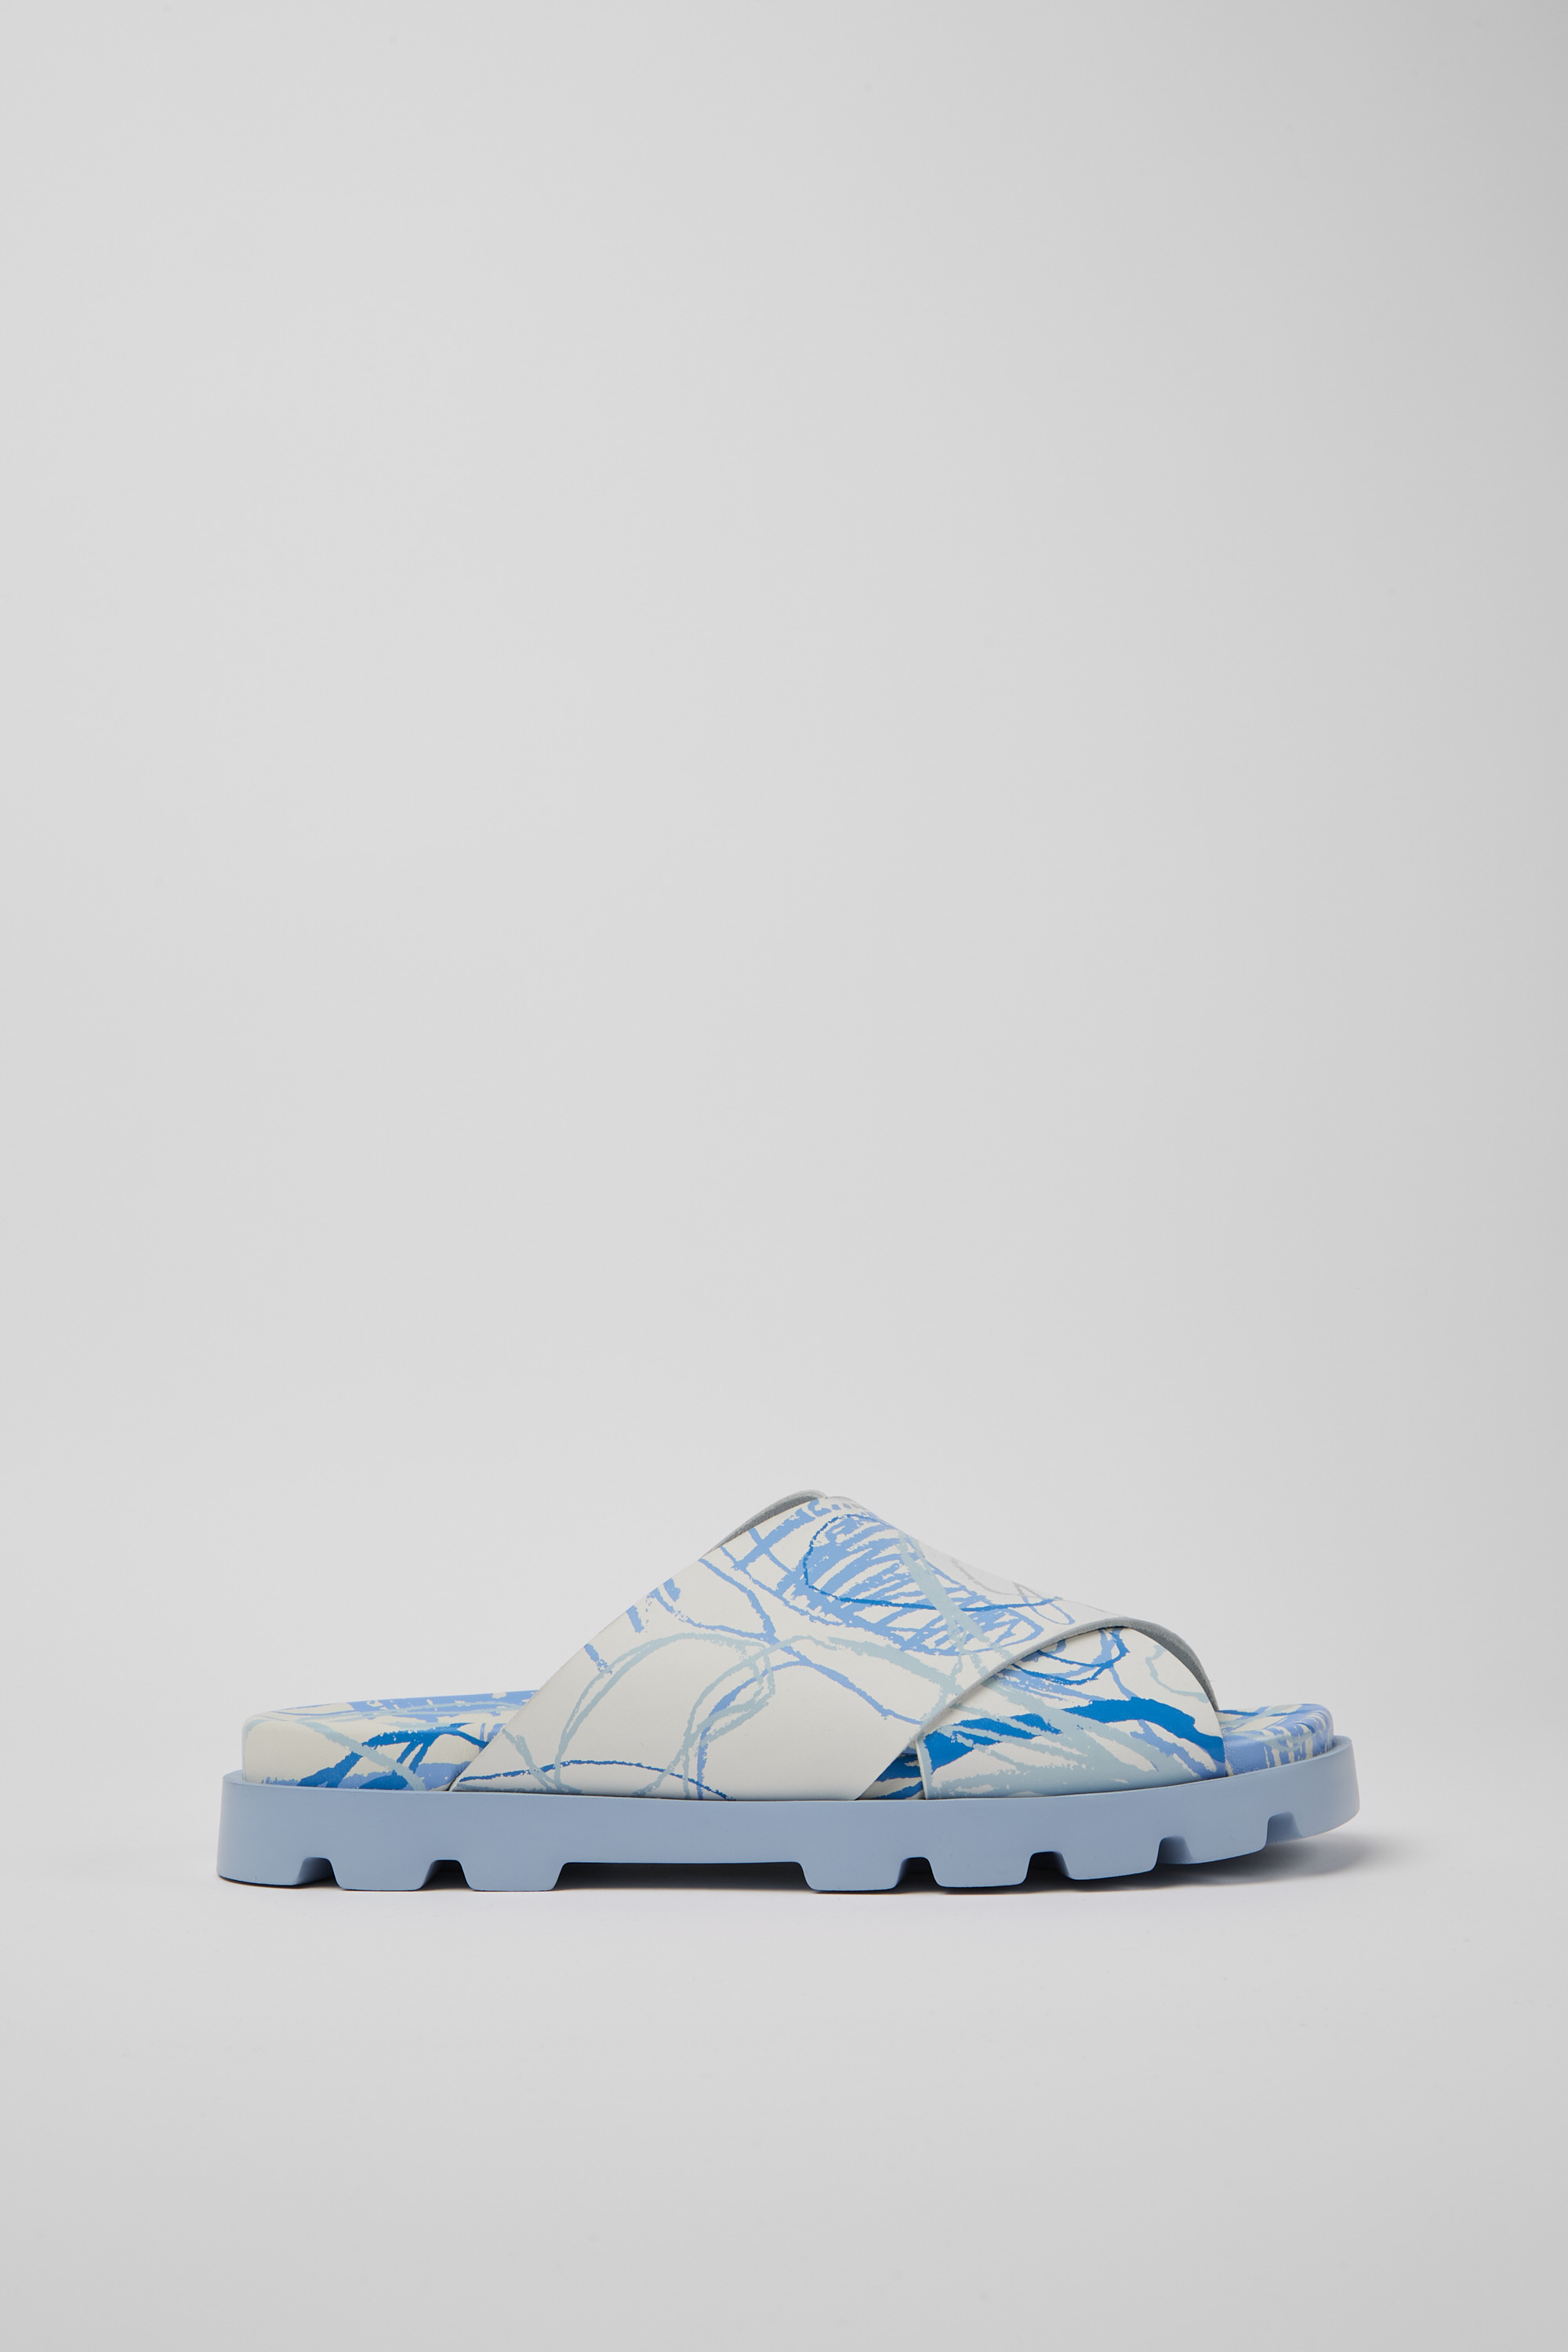 Louis Vuitton HONOLULU MULE Slides - White Sandals, Shoes